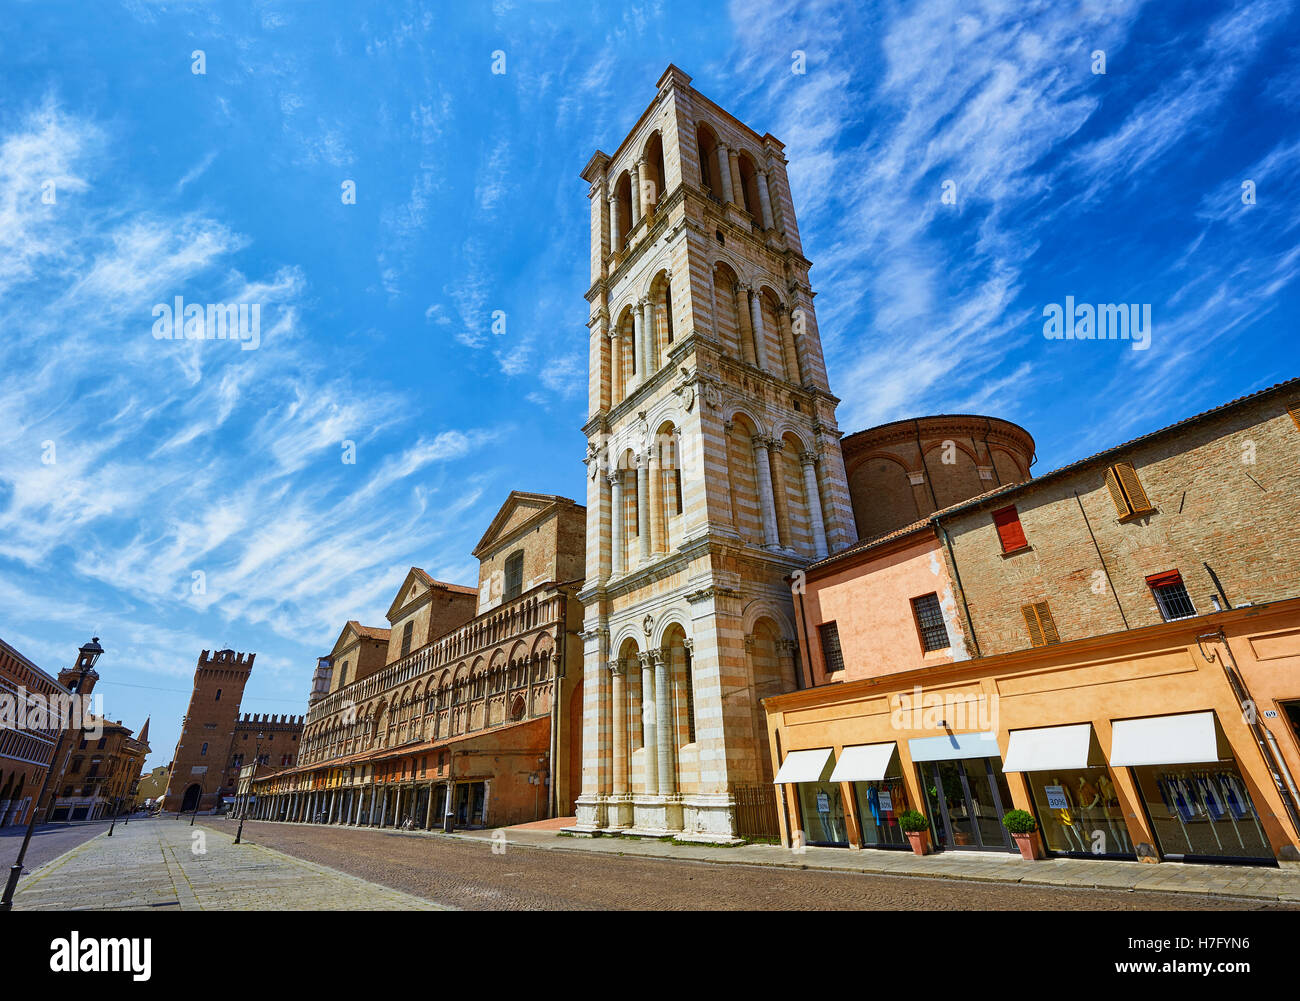 Façade de la cathédrale romane du xiie siècle Ferrara, Italie Banque D'Images